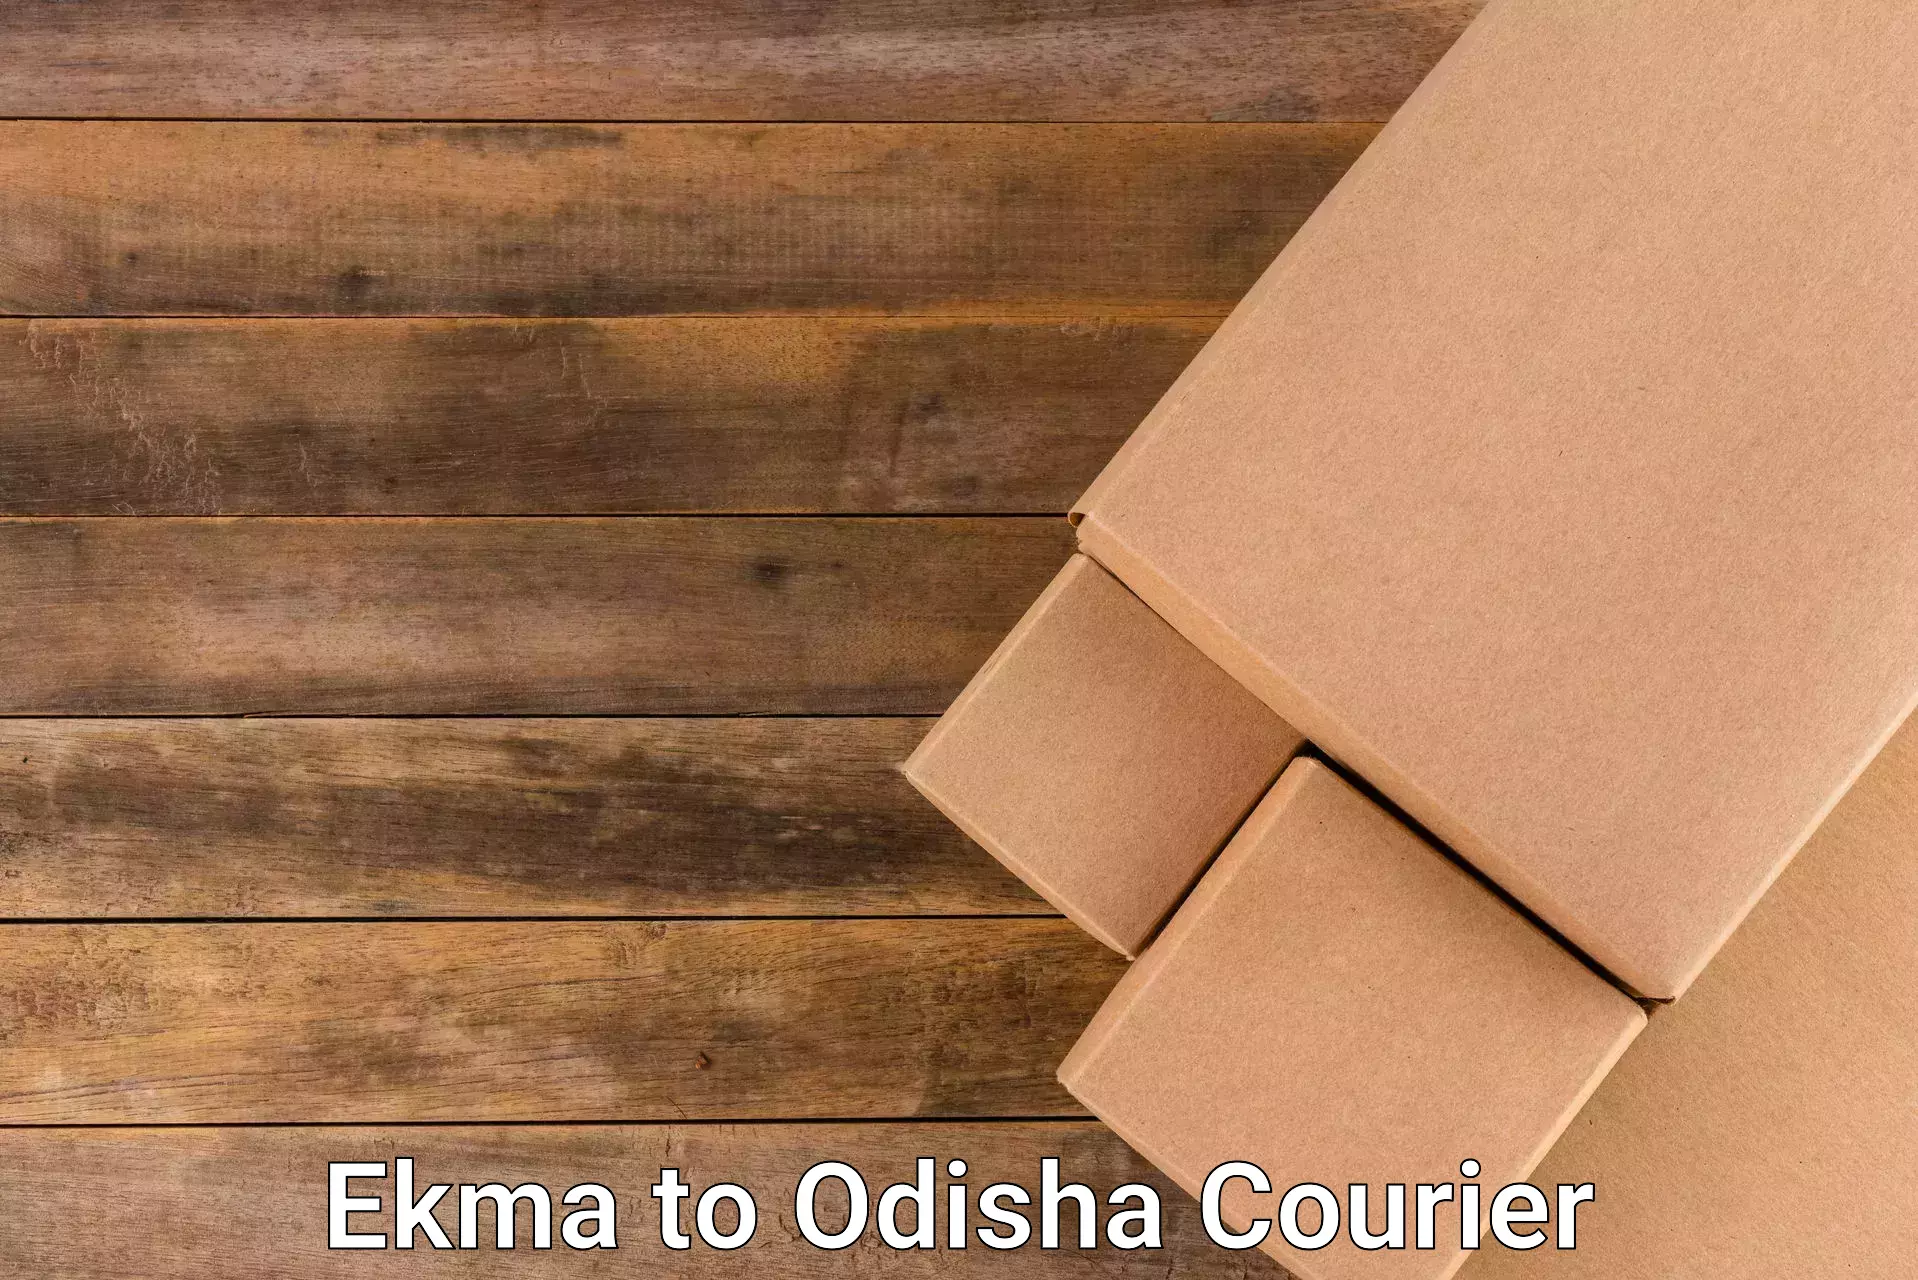 Same-day delivery solutions Ekma to Turanga